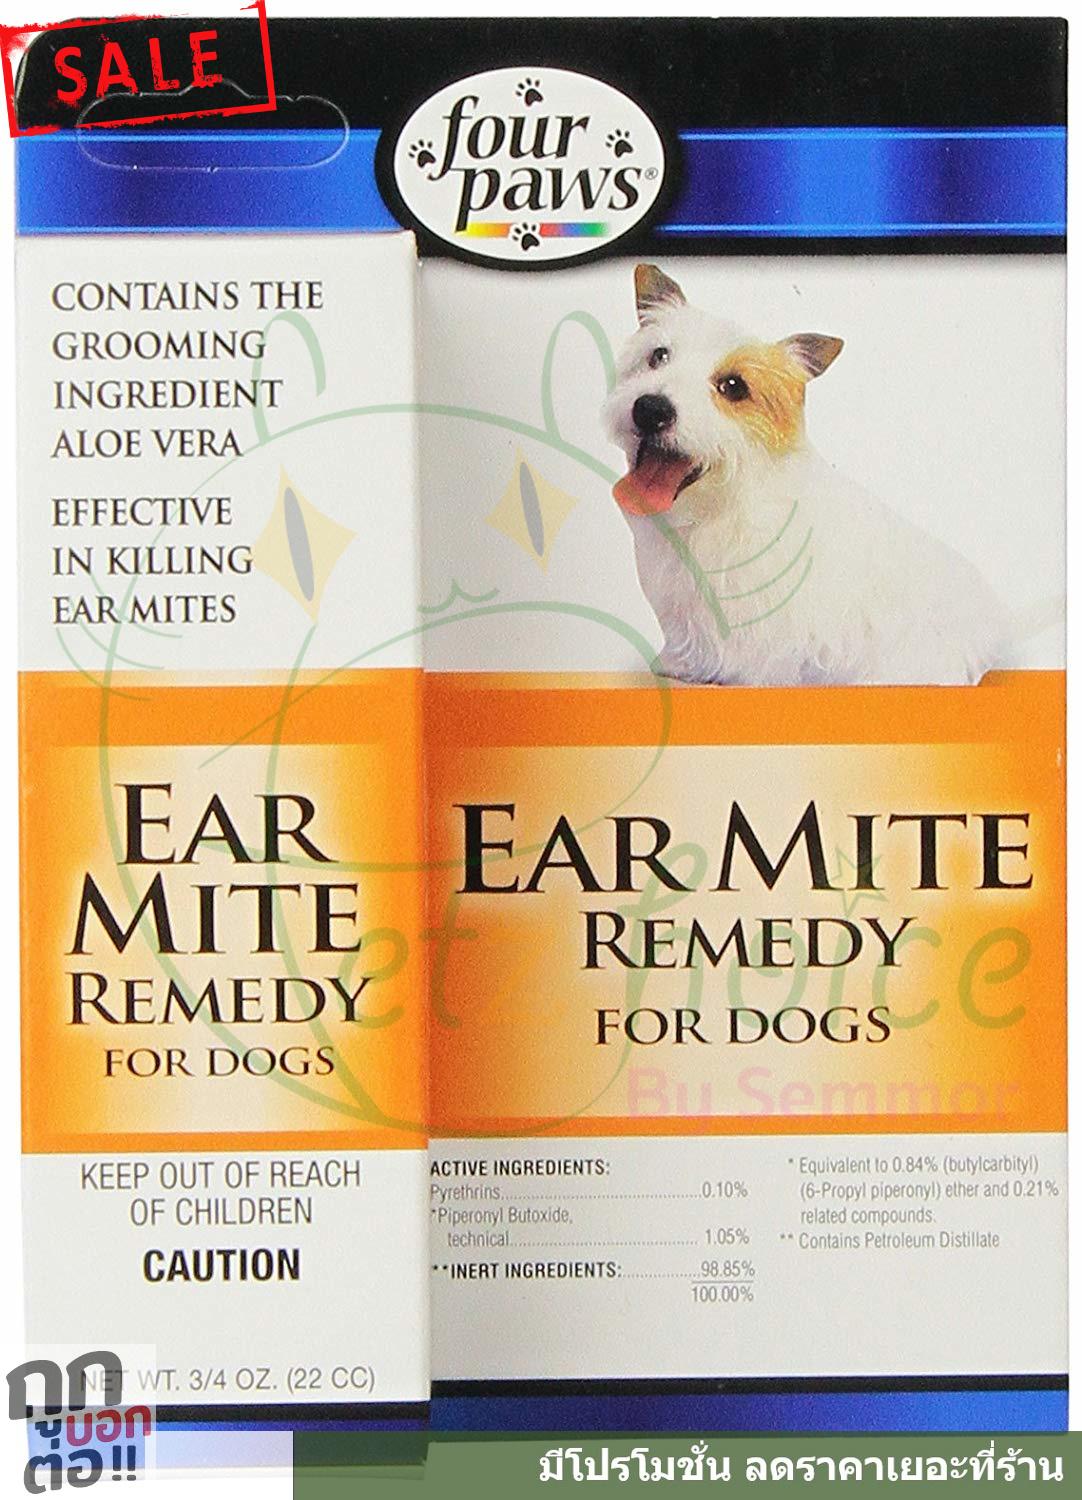 น้ำยาเช็ดหู โลชั่นเช็ดหู น้ำยาเช็ดทำความสะอาดหู ไล่ ฆ่า ไร หู หมา สุนัข Four Paws Ear Mite Remedy for Dogs (22 cc) น้ำ